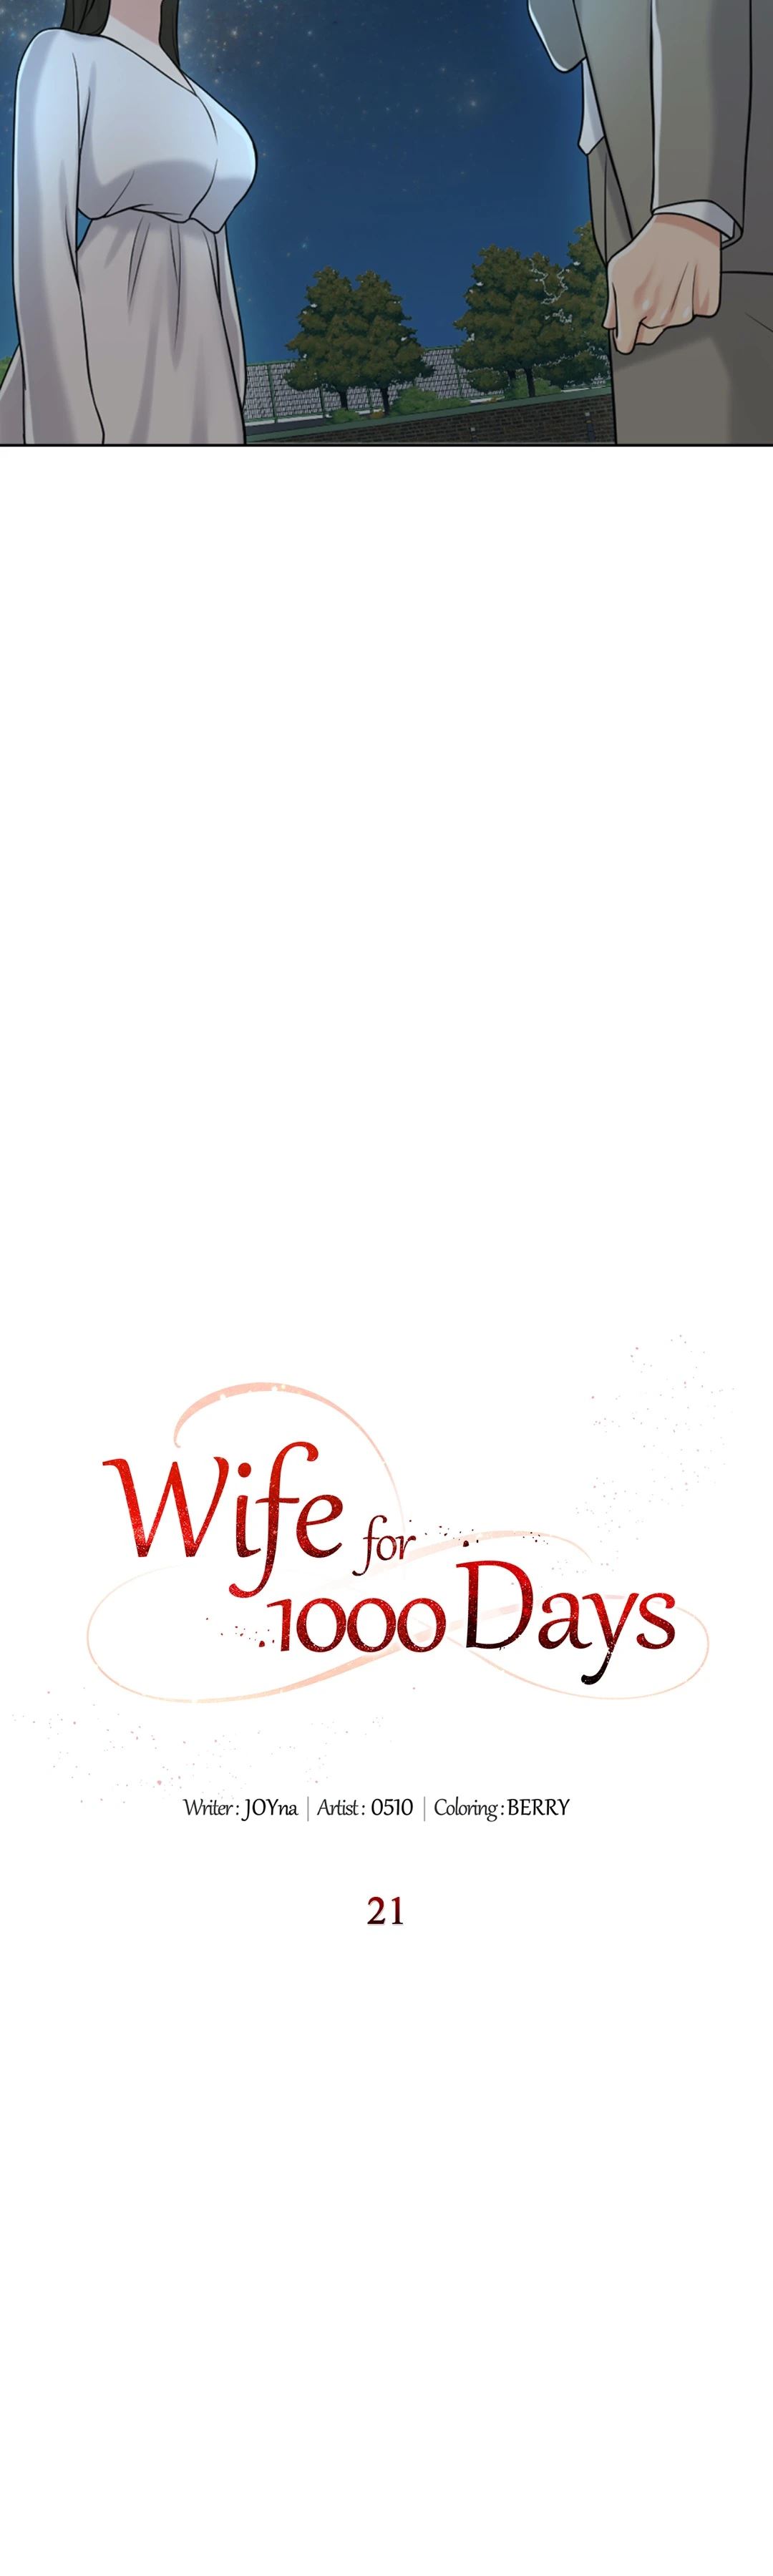 Watch image manhwa Wife For 1000 Days - Chapter 21 - 156303da8d886a77da - ManhwaXX.net